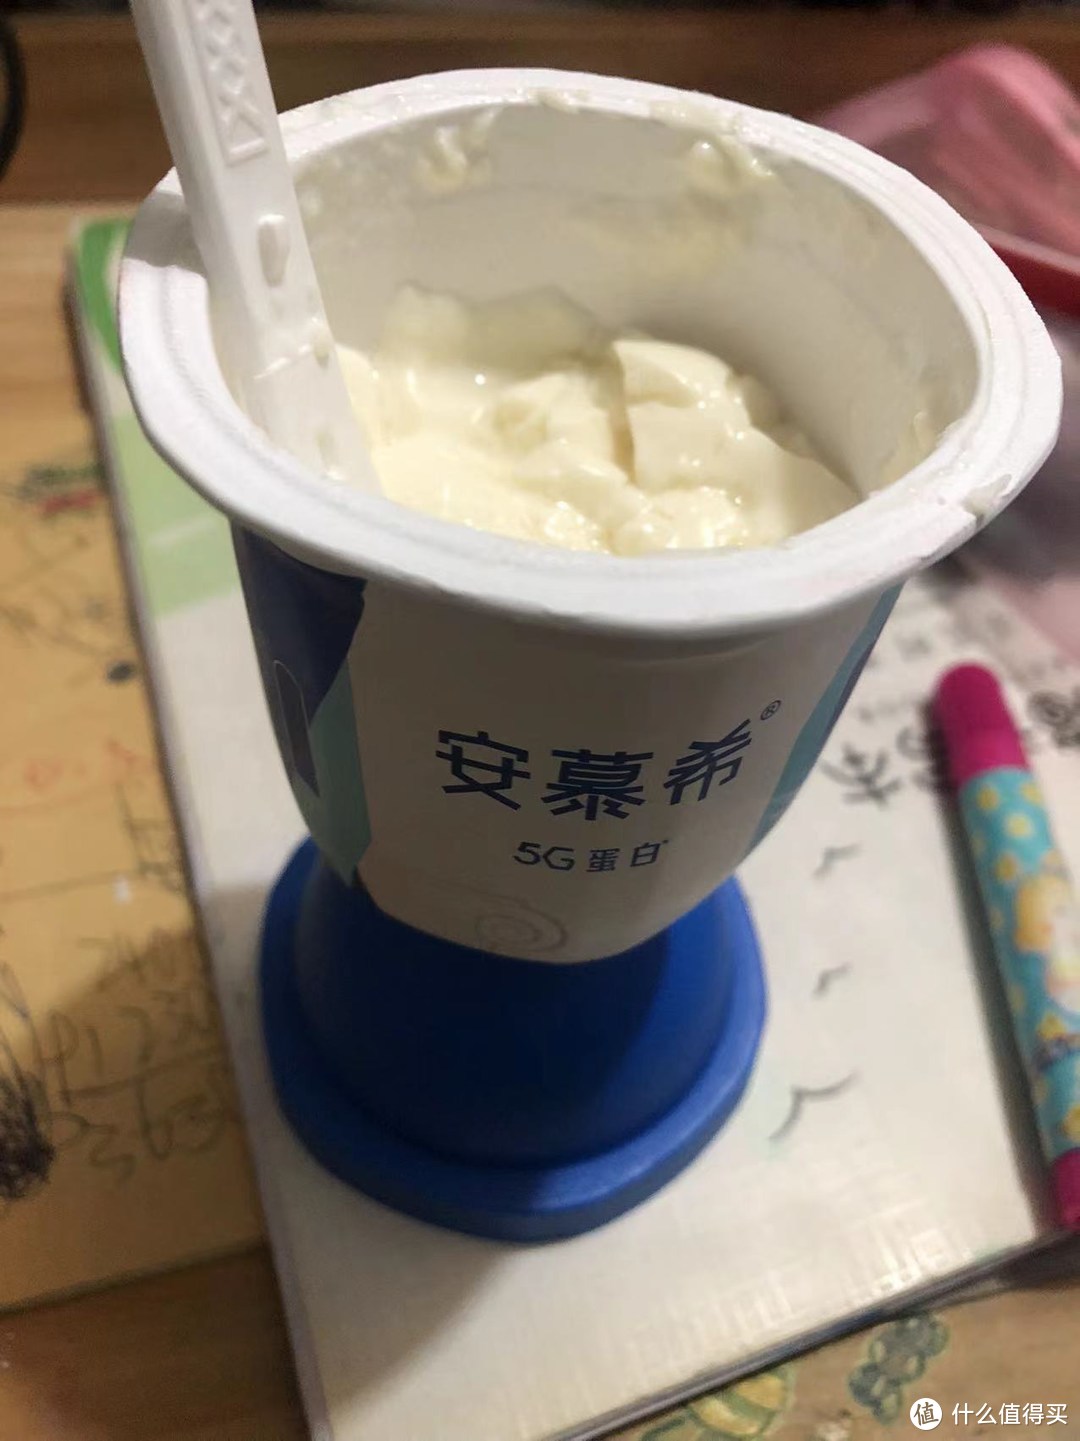 安慕希5g蓝胖子酸奶~最有仪式感的酸奶